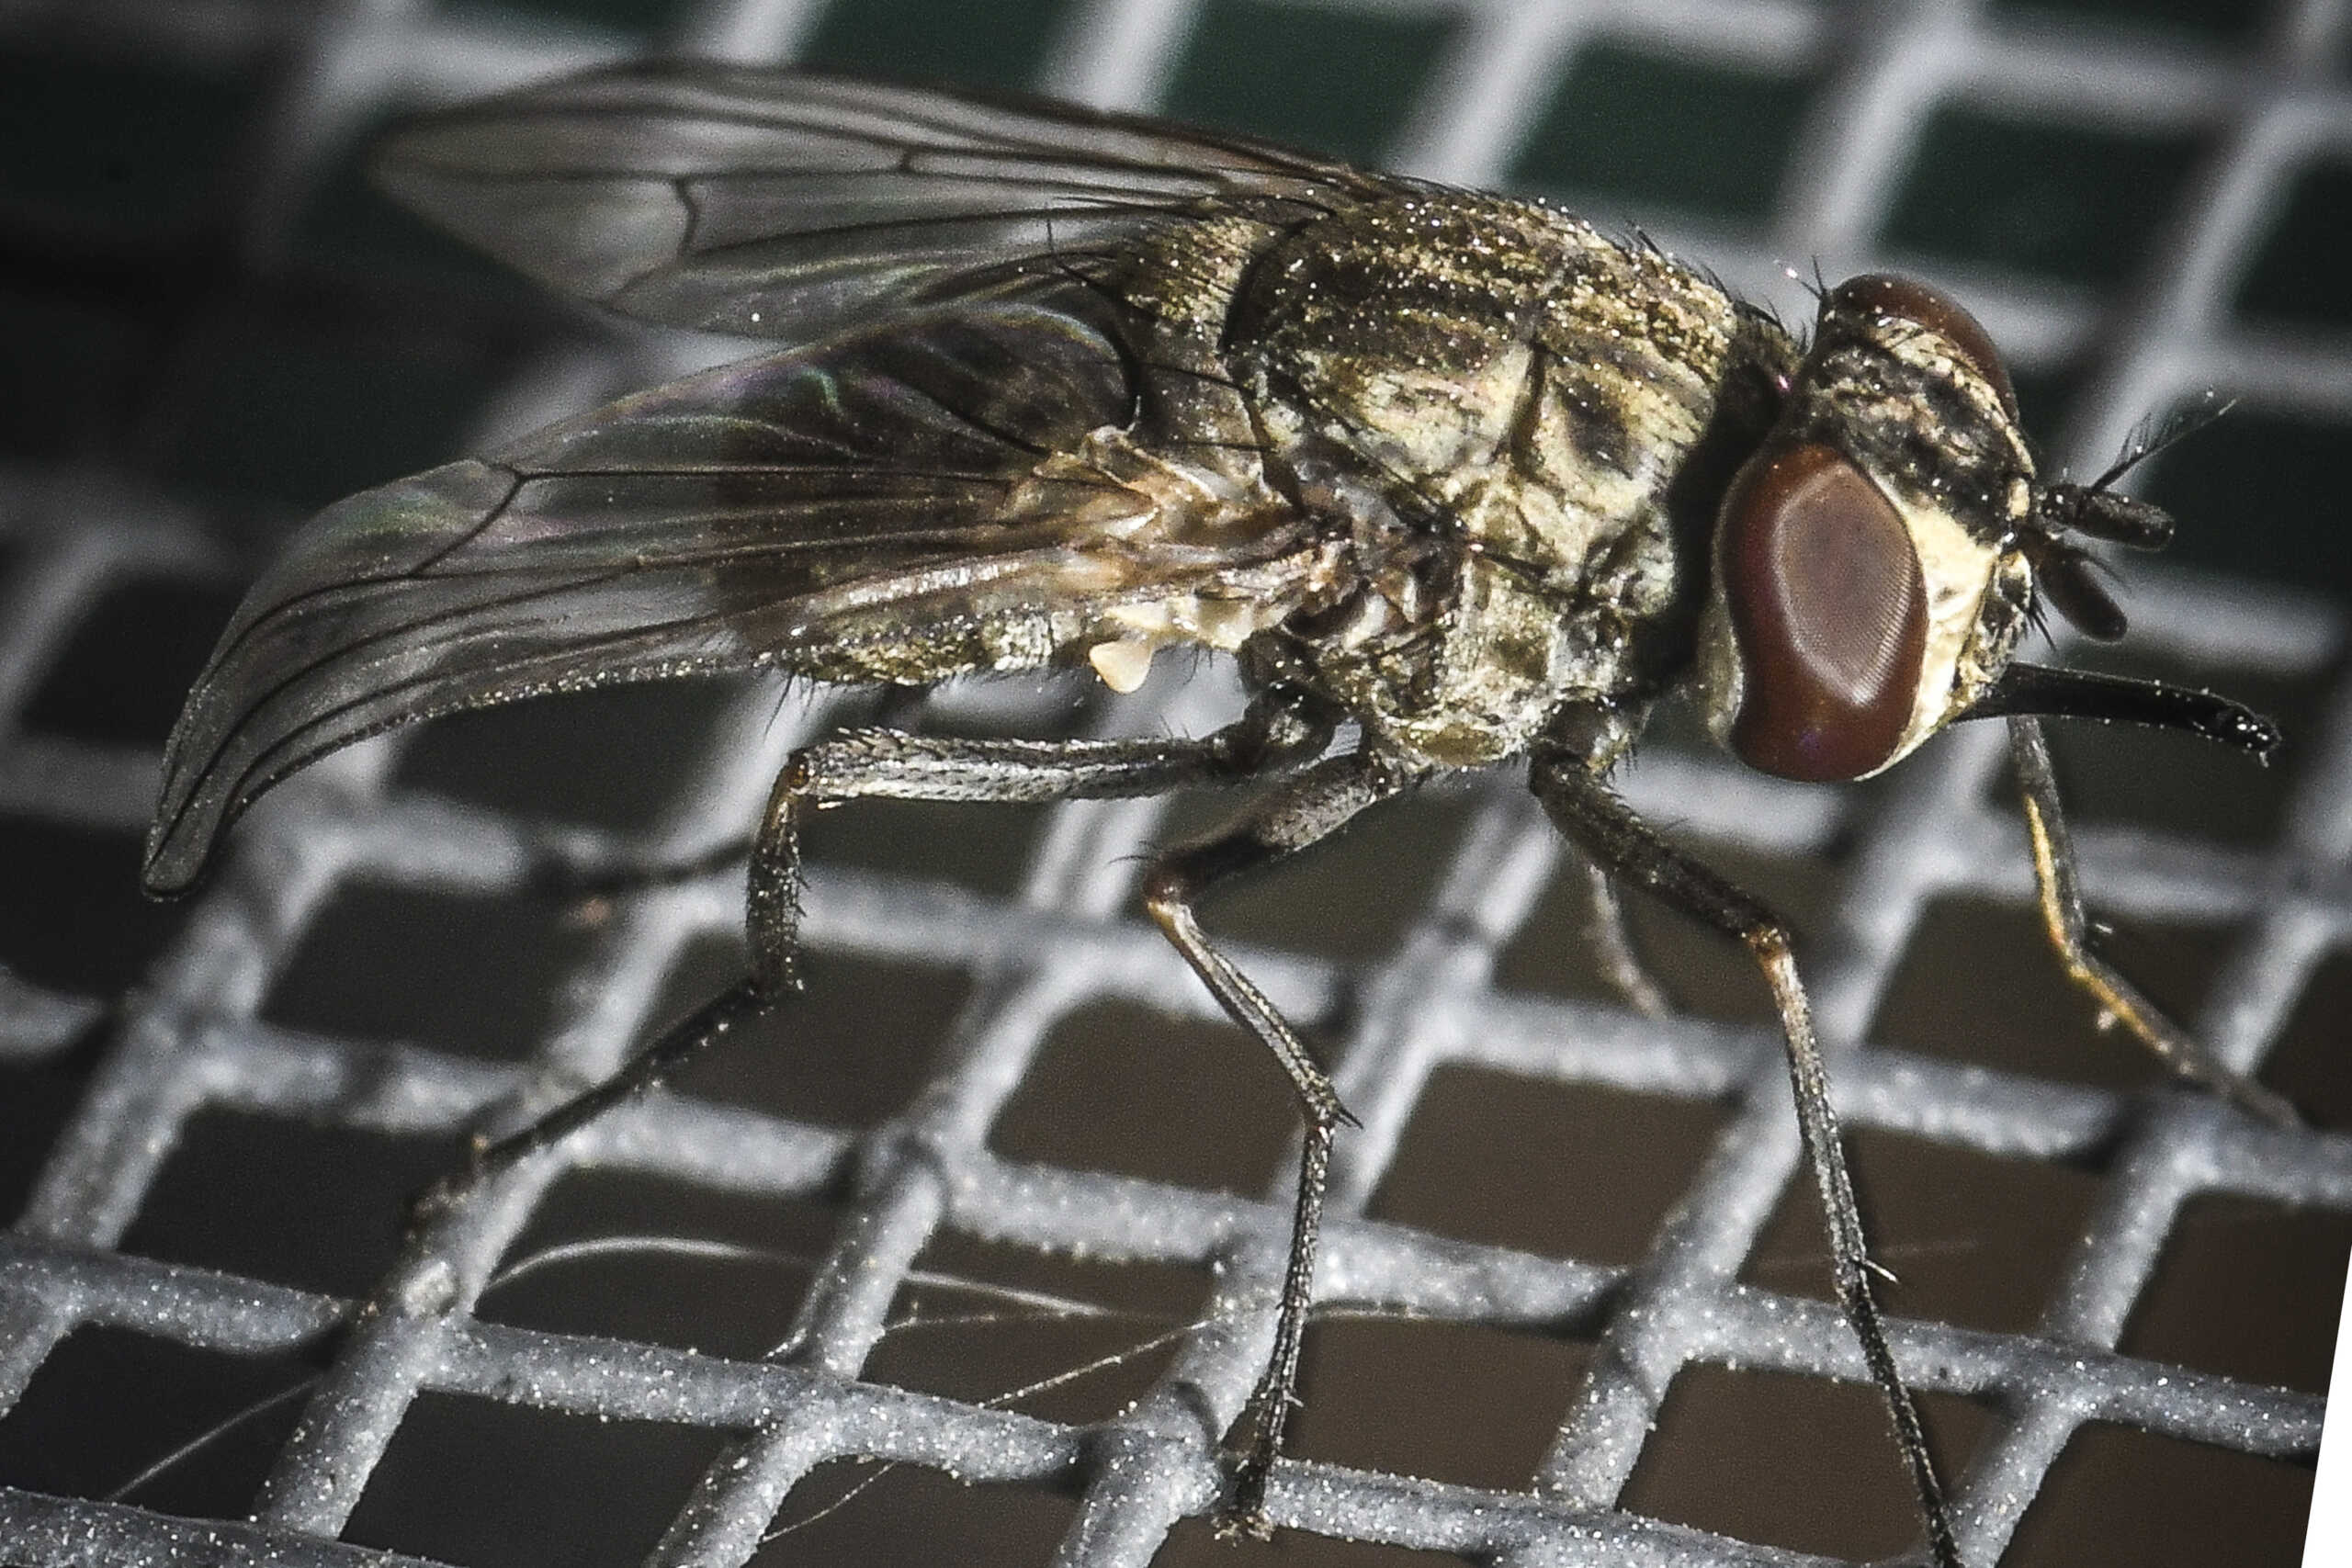 Μύγα βρέθηκε ανέπαφη μέσα στο έντερο 63χρονου άνδρα στις ΗΠΑ